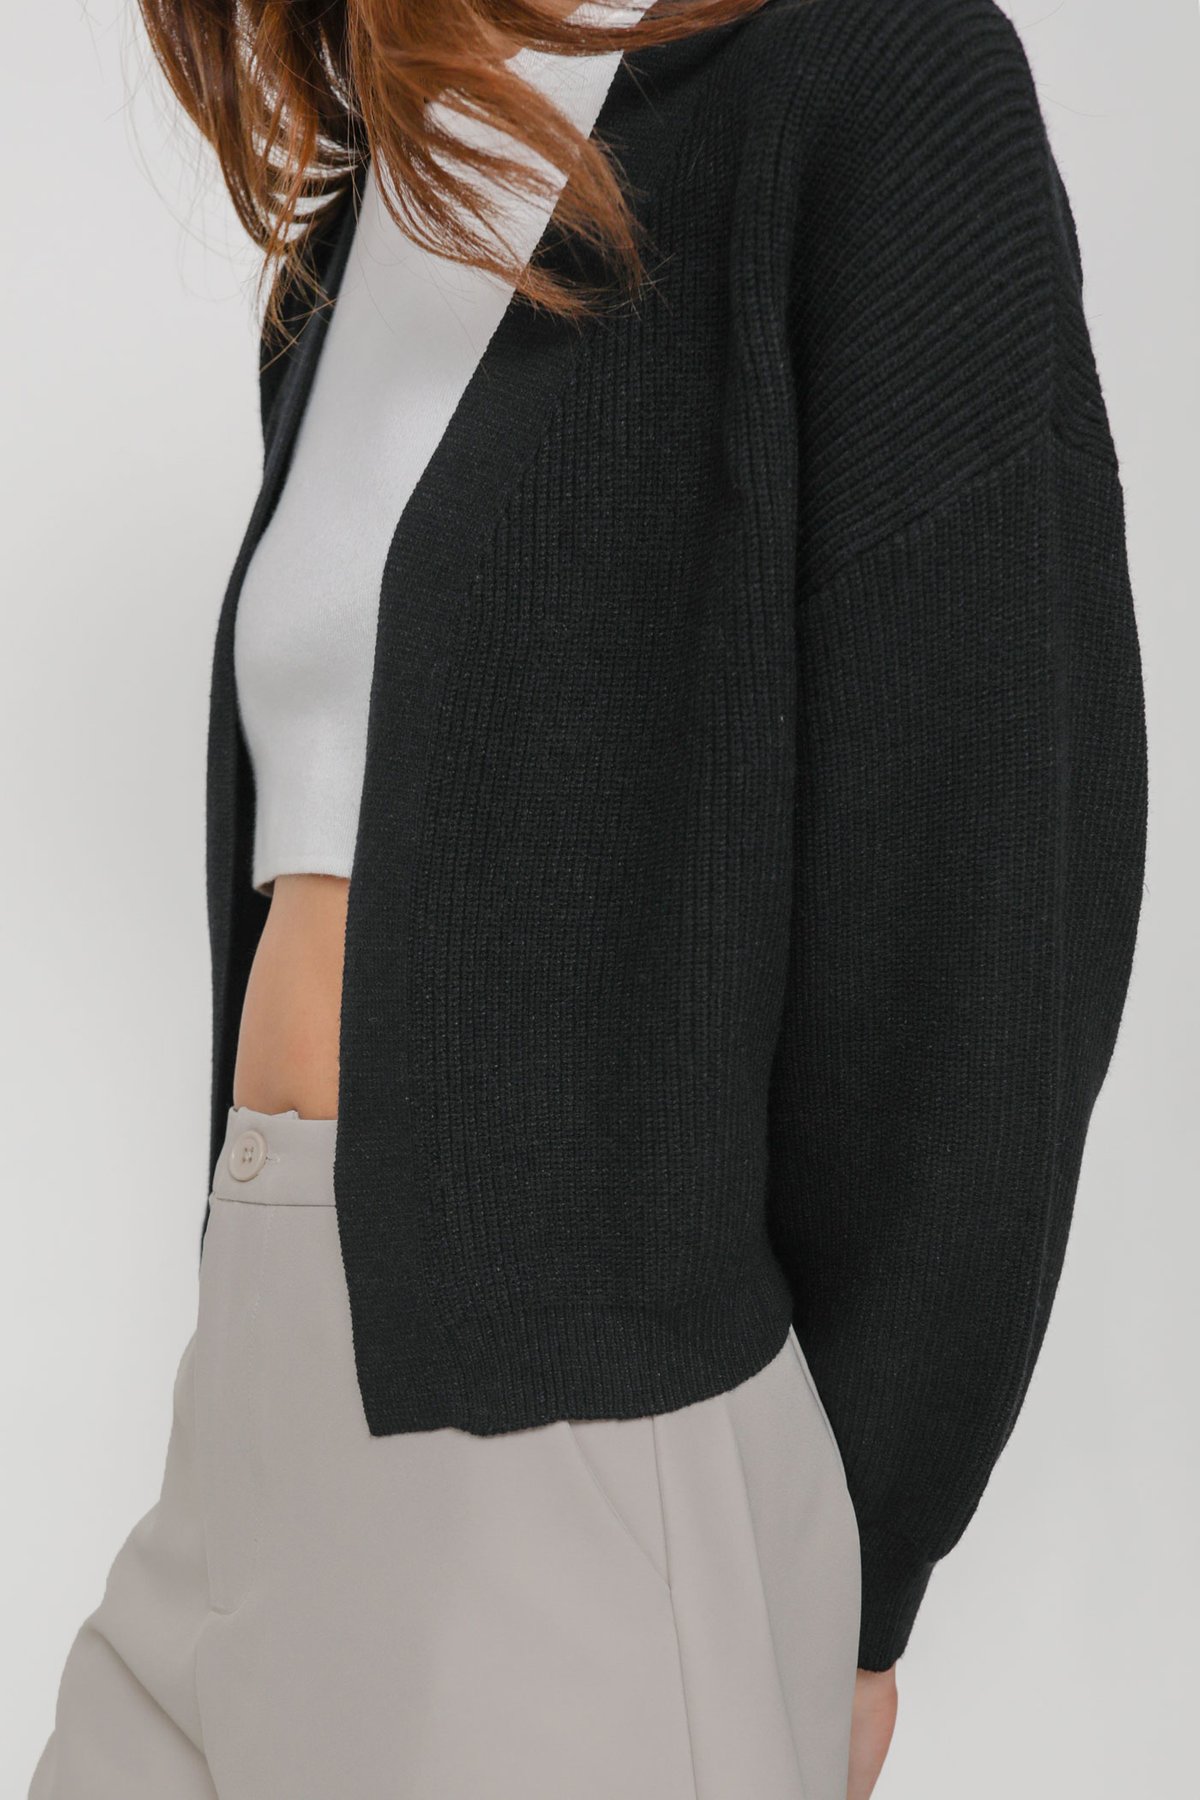 Odette Knit Crop Cardigan (Black)